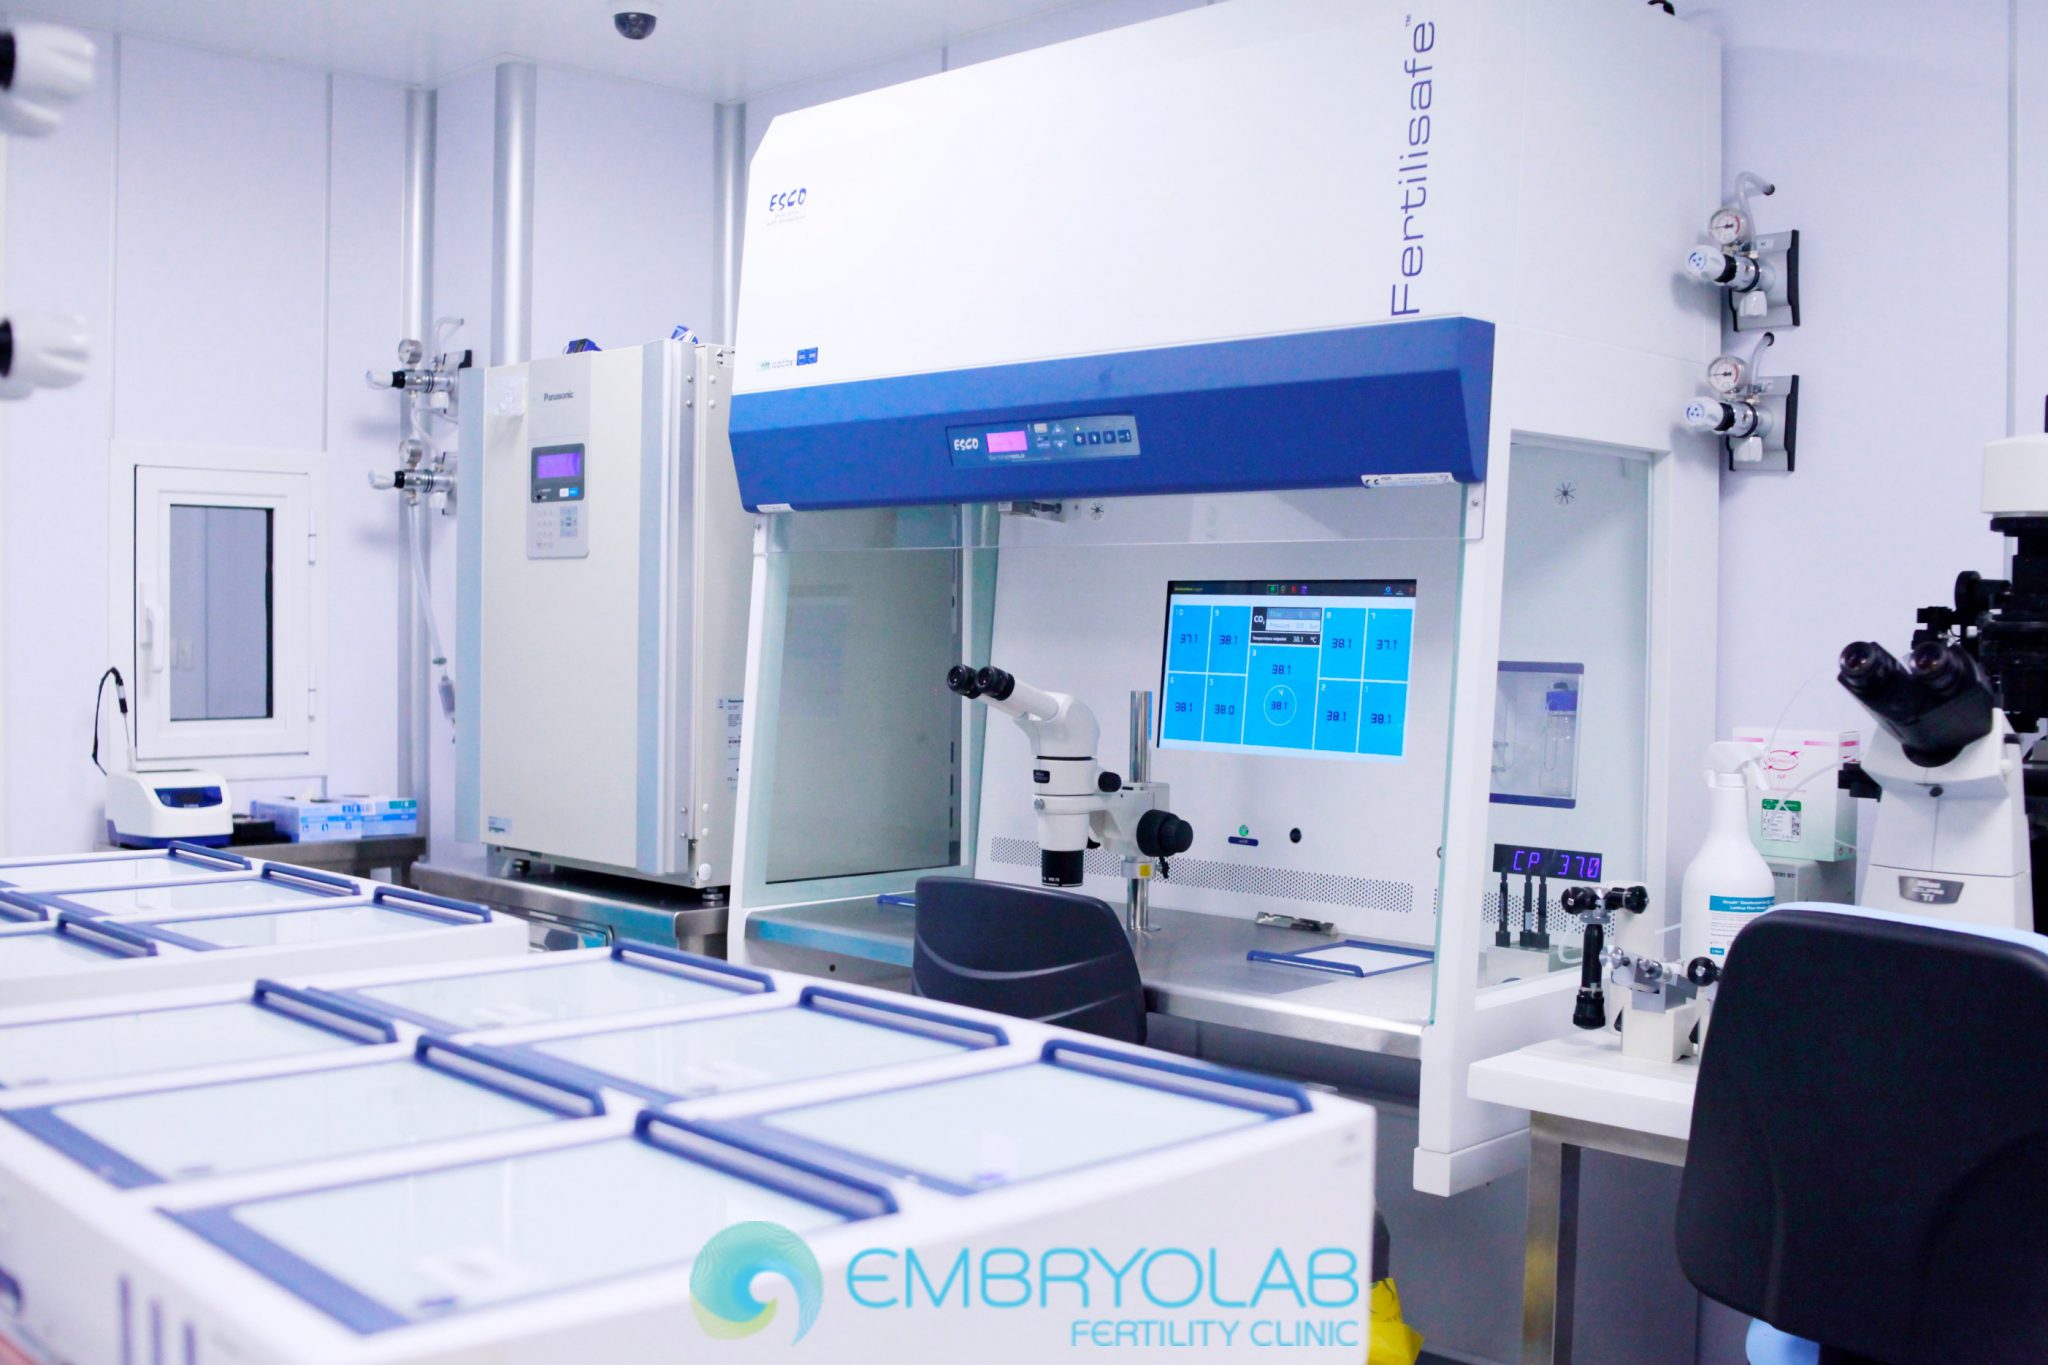 Embryolab IVF lab